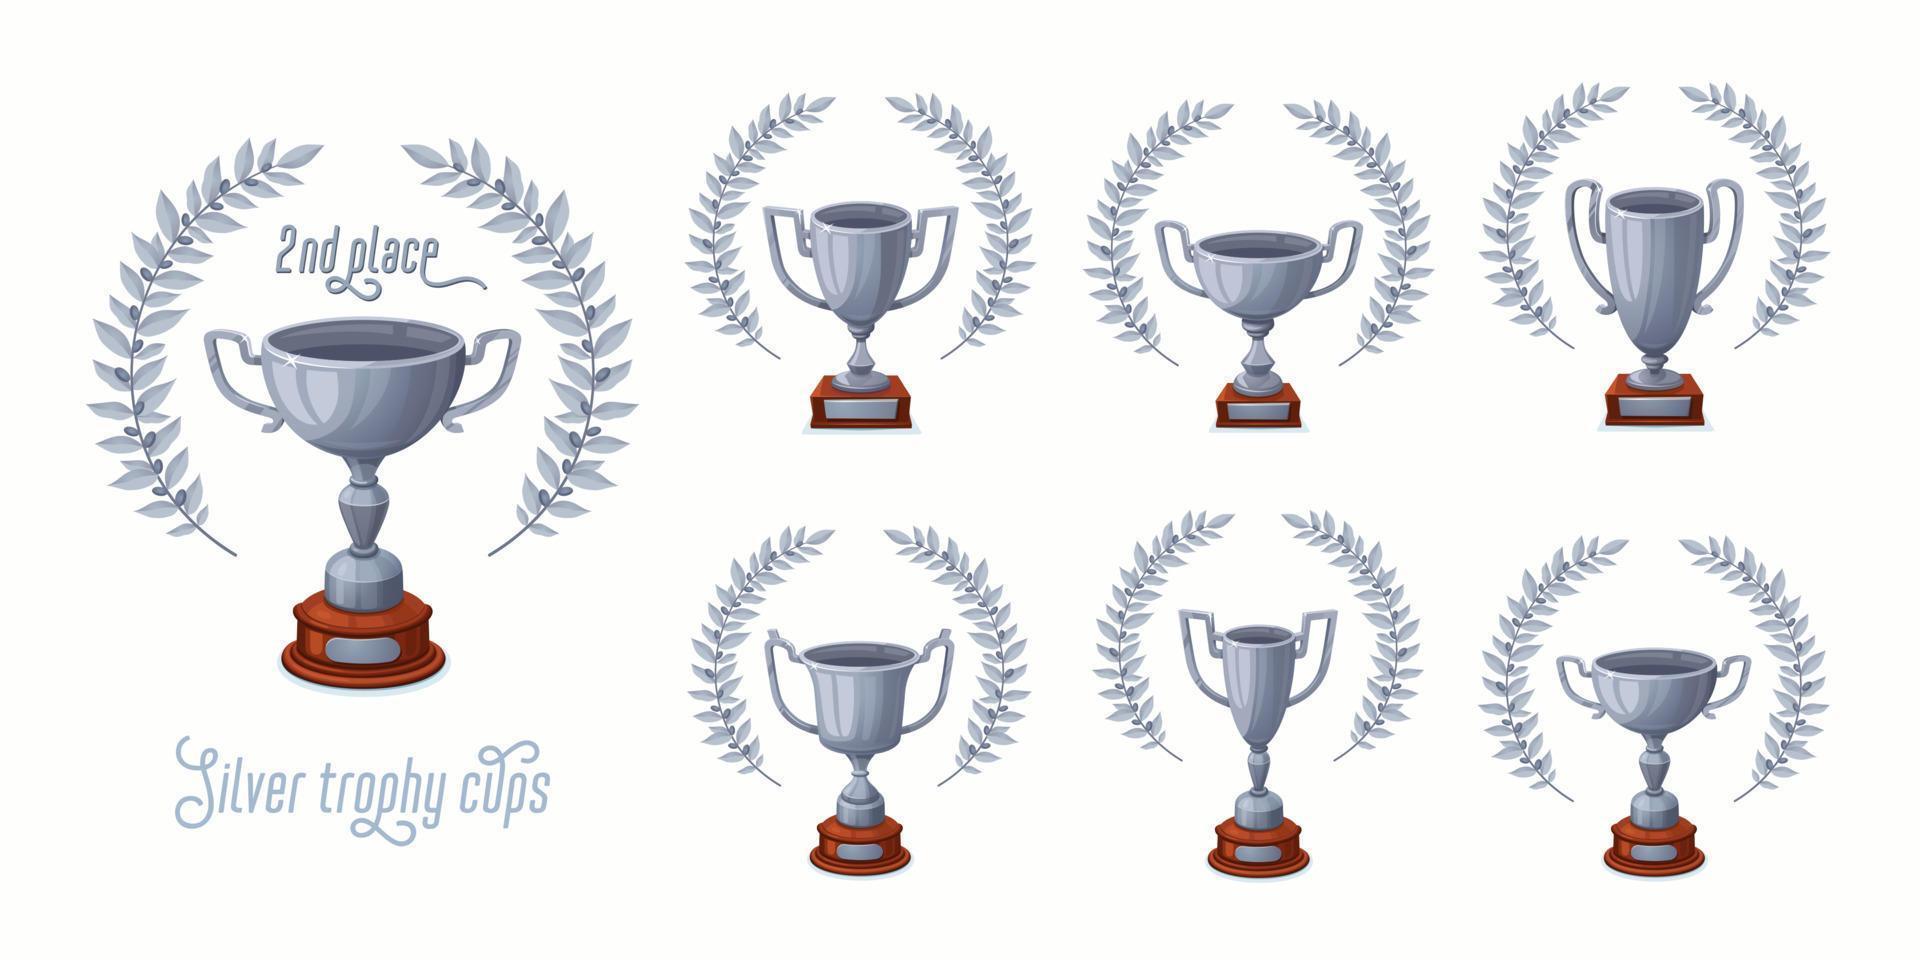 zilver trofee cups met laurier kransen. trofee prijs cups reeks met verschillend vormen - 2e plaats winnaar trofeeën. tekenfilm stijl vector illustratie.